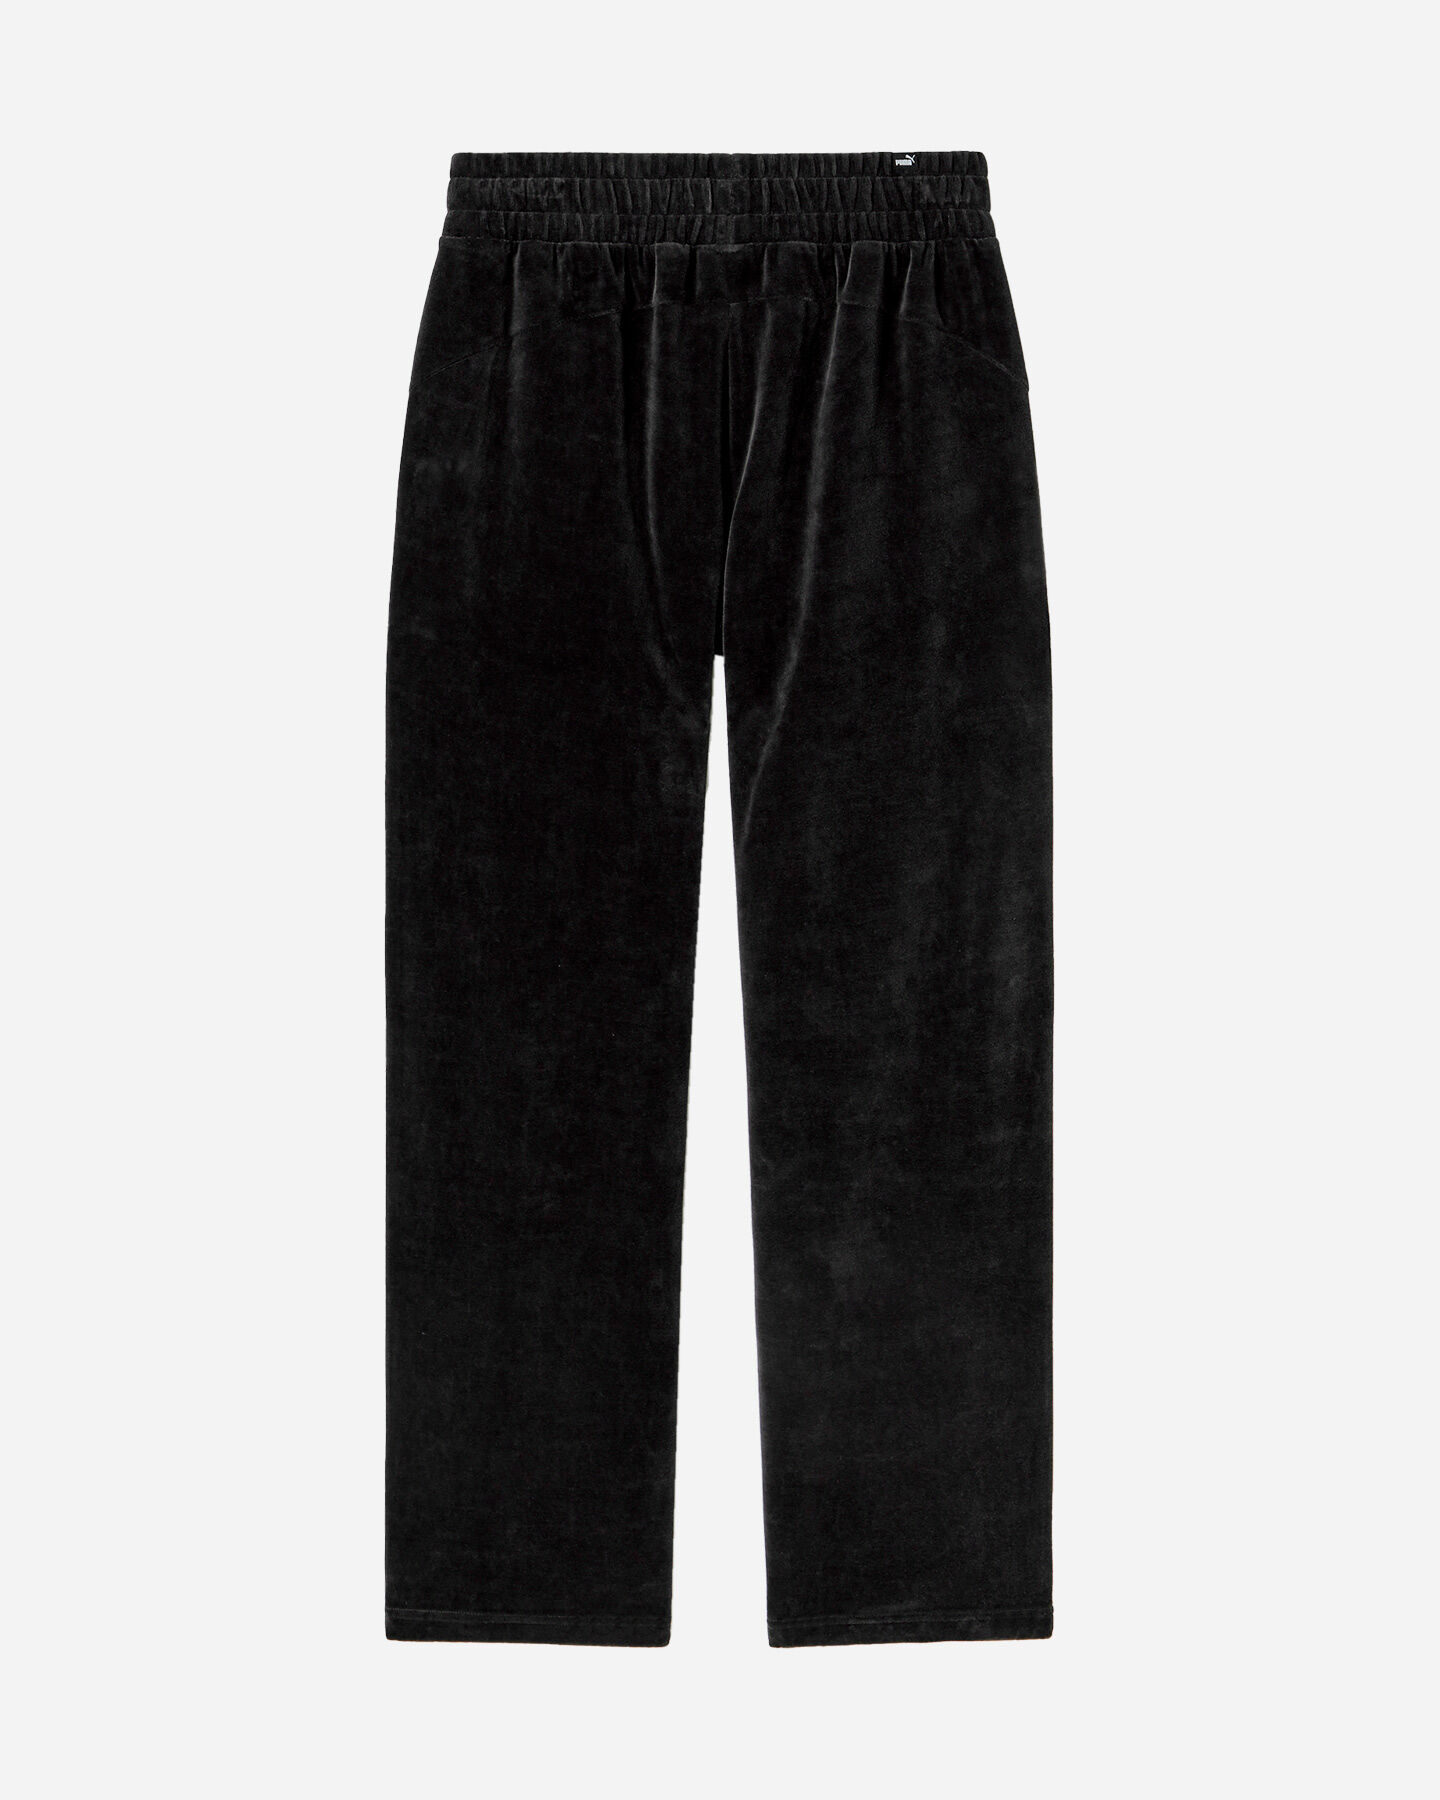  Pantalone PUMA SMALL LOGO W S5615083|01|S scatto 1